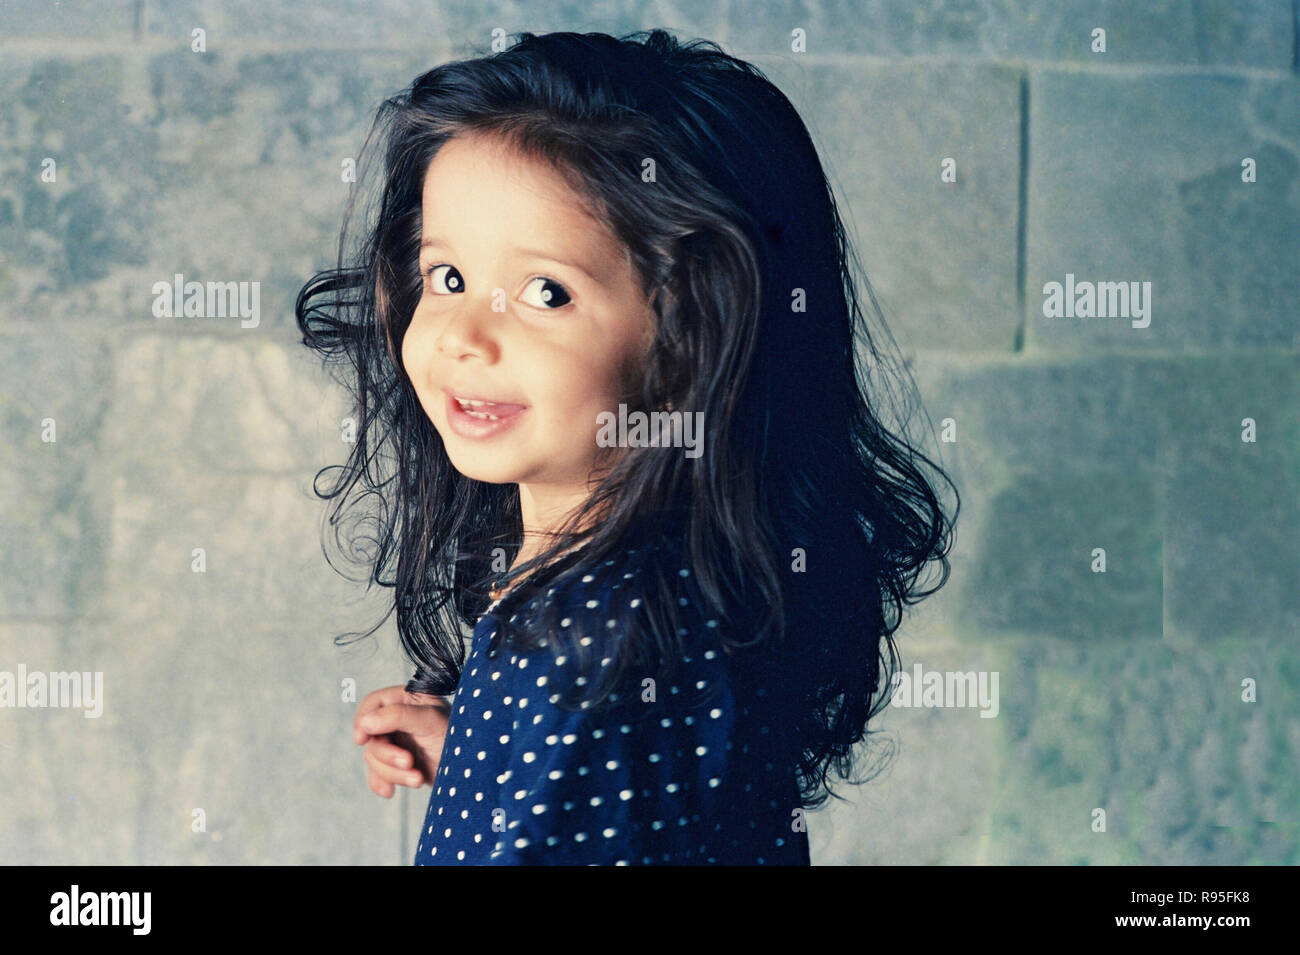 Petite fille enfant portant une robe bleue à pois Photo Stock - Alamy